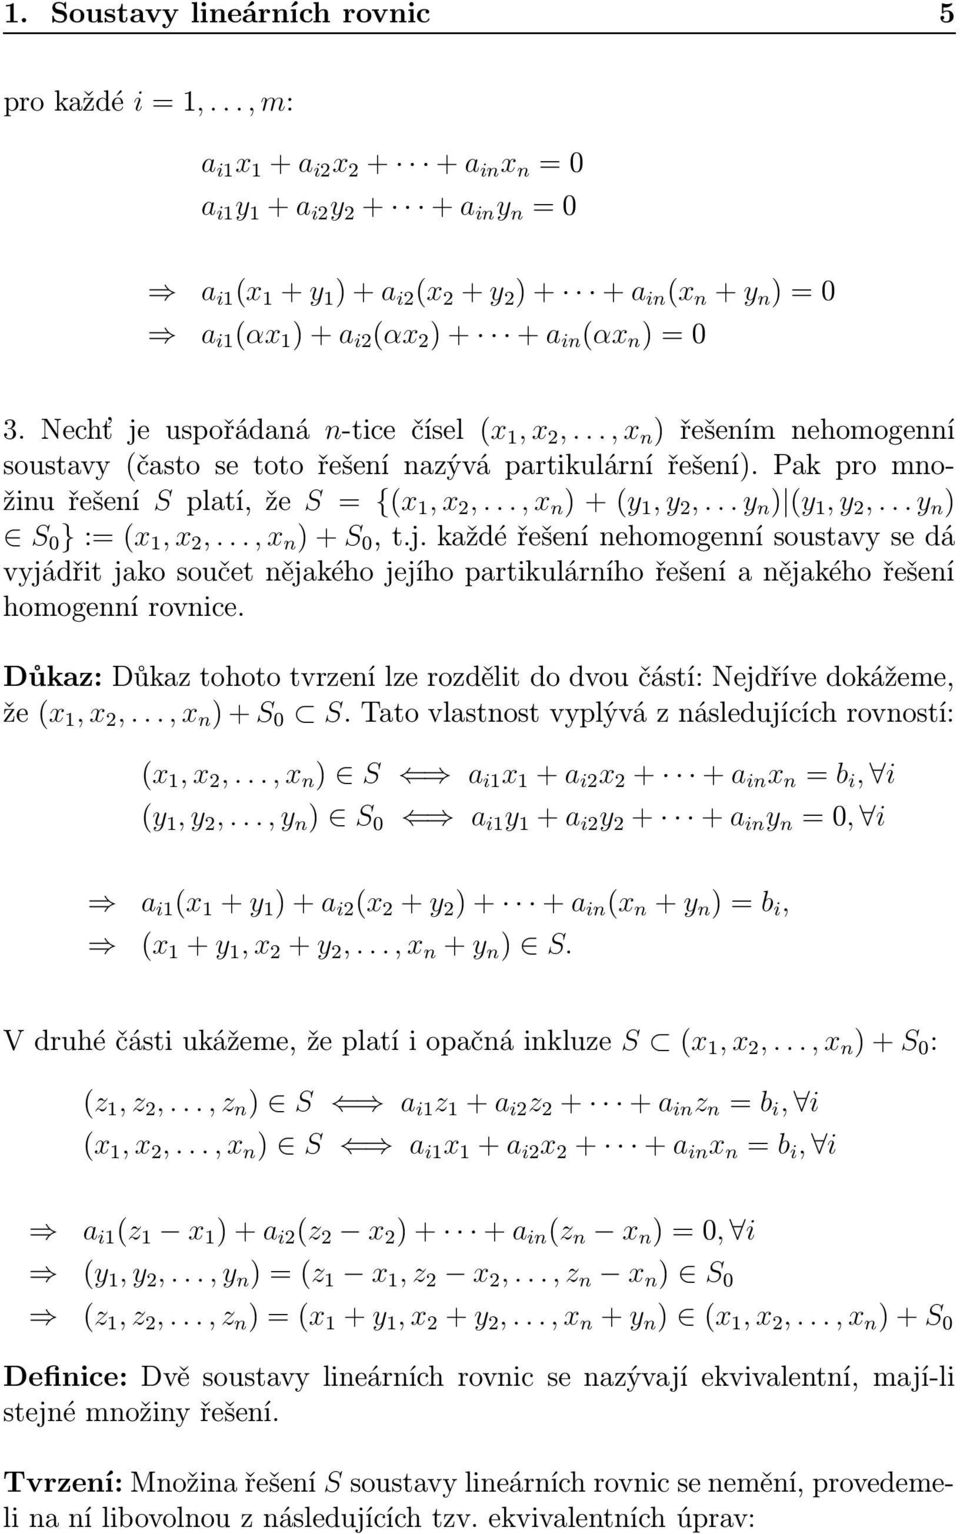 Nechť je uspořádaná n-tice čísel (x 1, x 2,..., x n ) řešením nehomogenní soustavy (často se toto řešení nazývá partikulární řešení). Pak pro množinu řešení S platí, že S = {(x 1, x 2,.